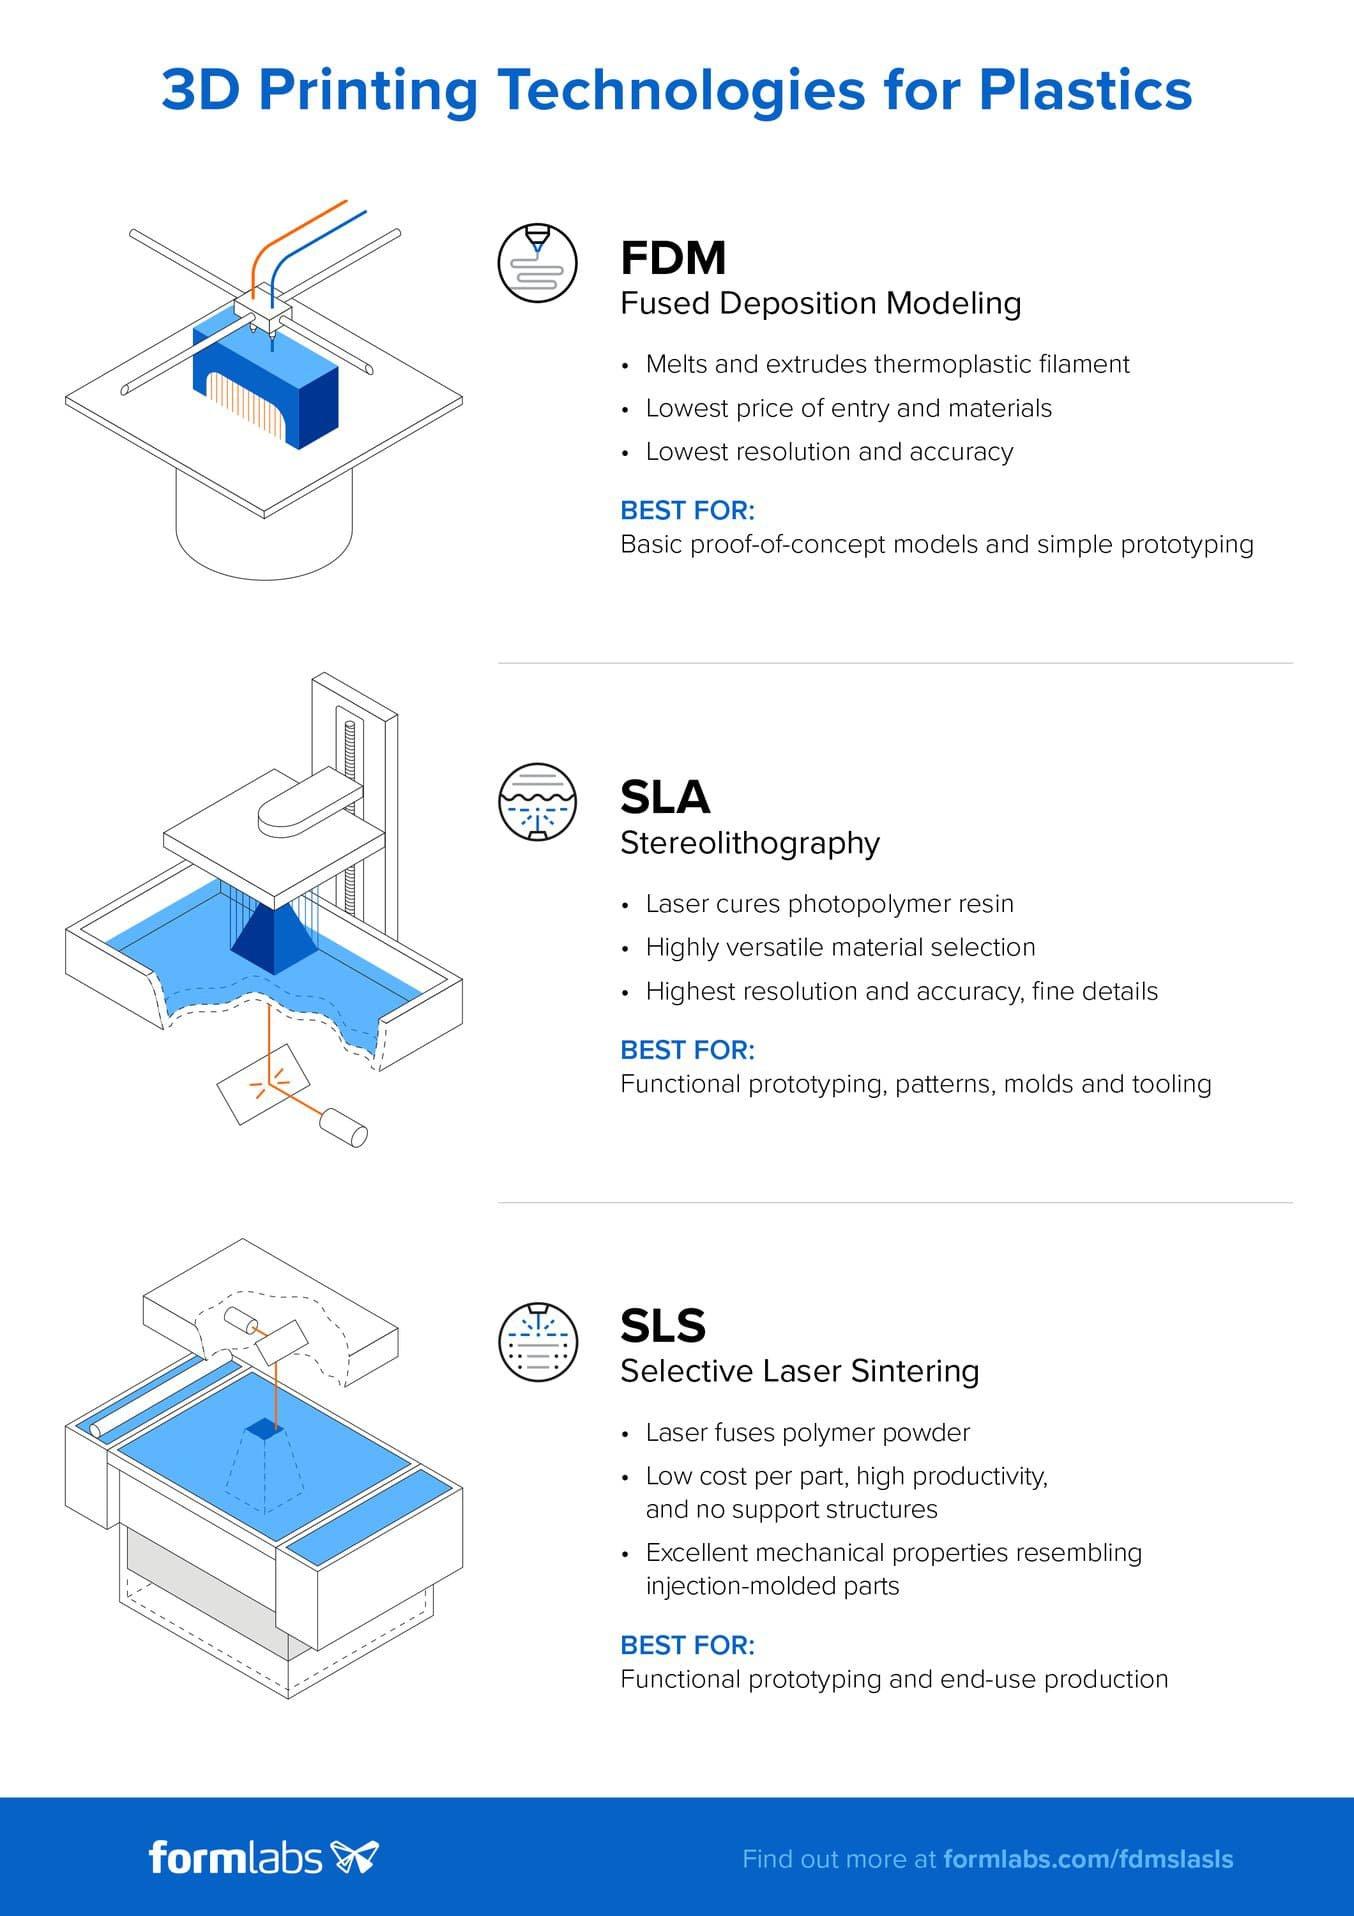 Téléchargez la version haute résolution de cette infographie ici. Vous souhaitez en savoir plus sur les technologies d'impression 3D FDM, SLA et SLS ? Consultez notre guide détaillé.